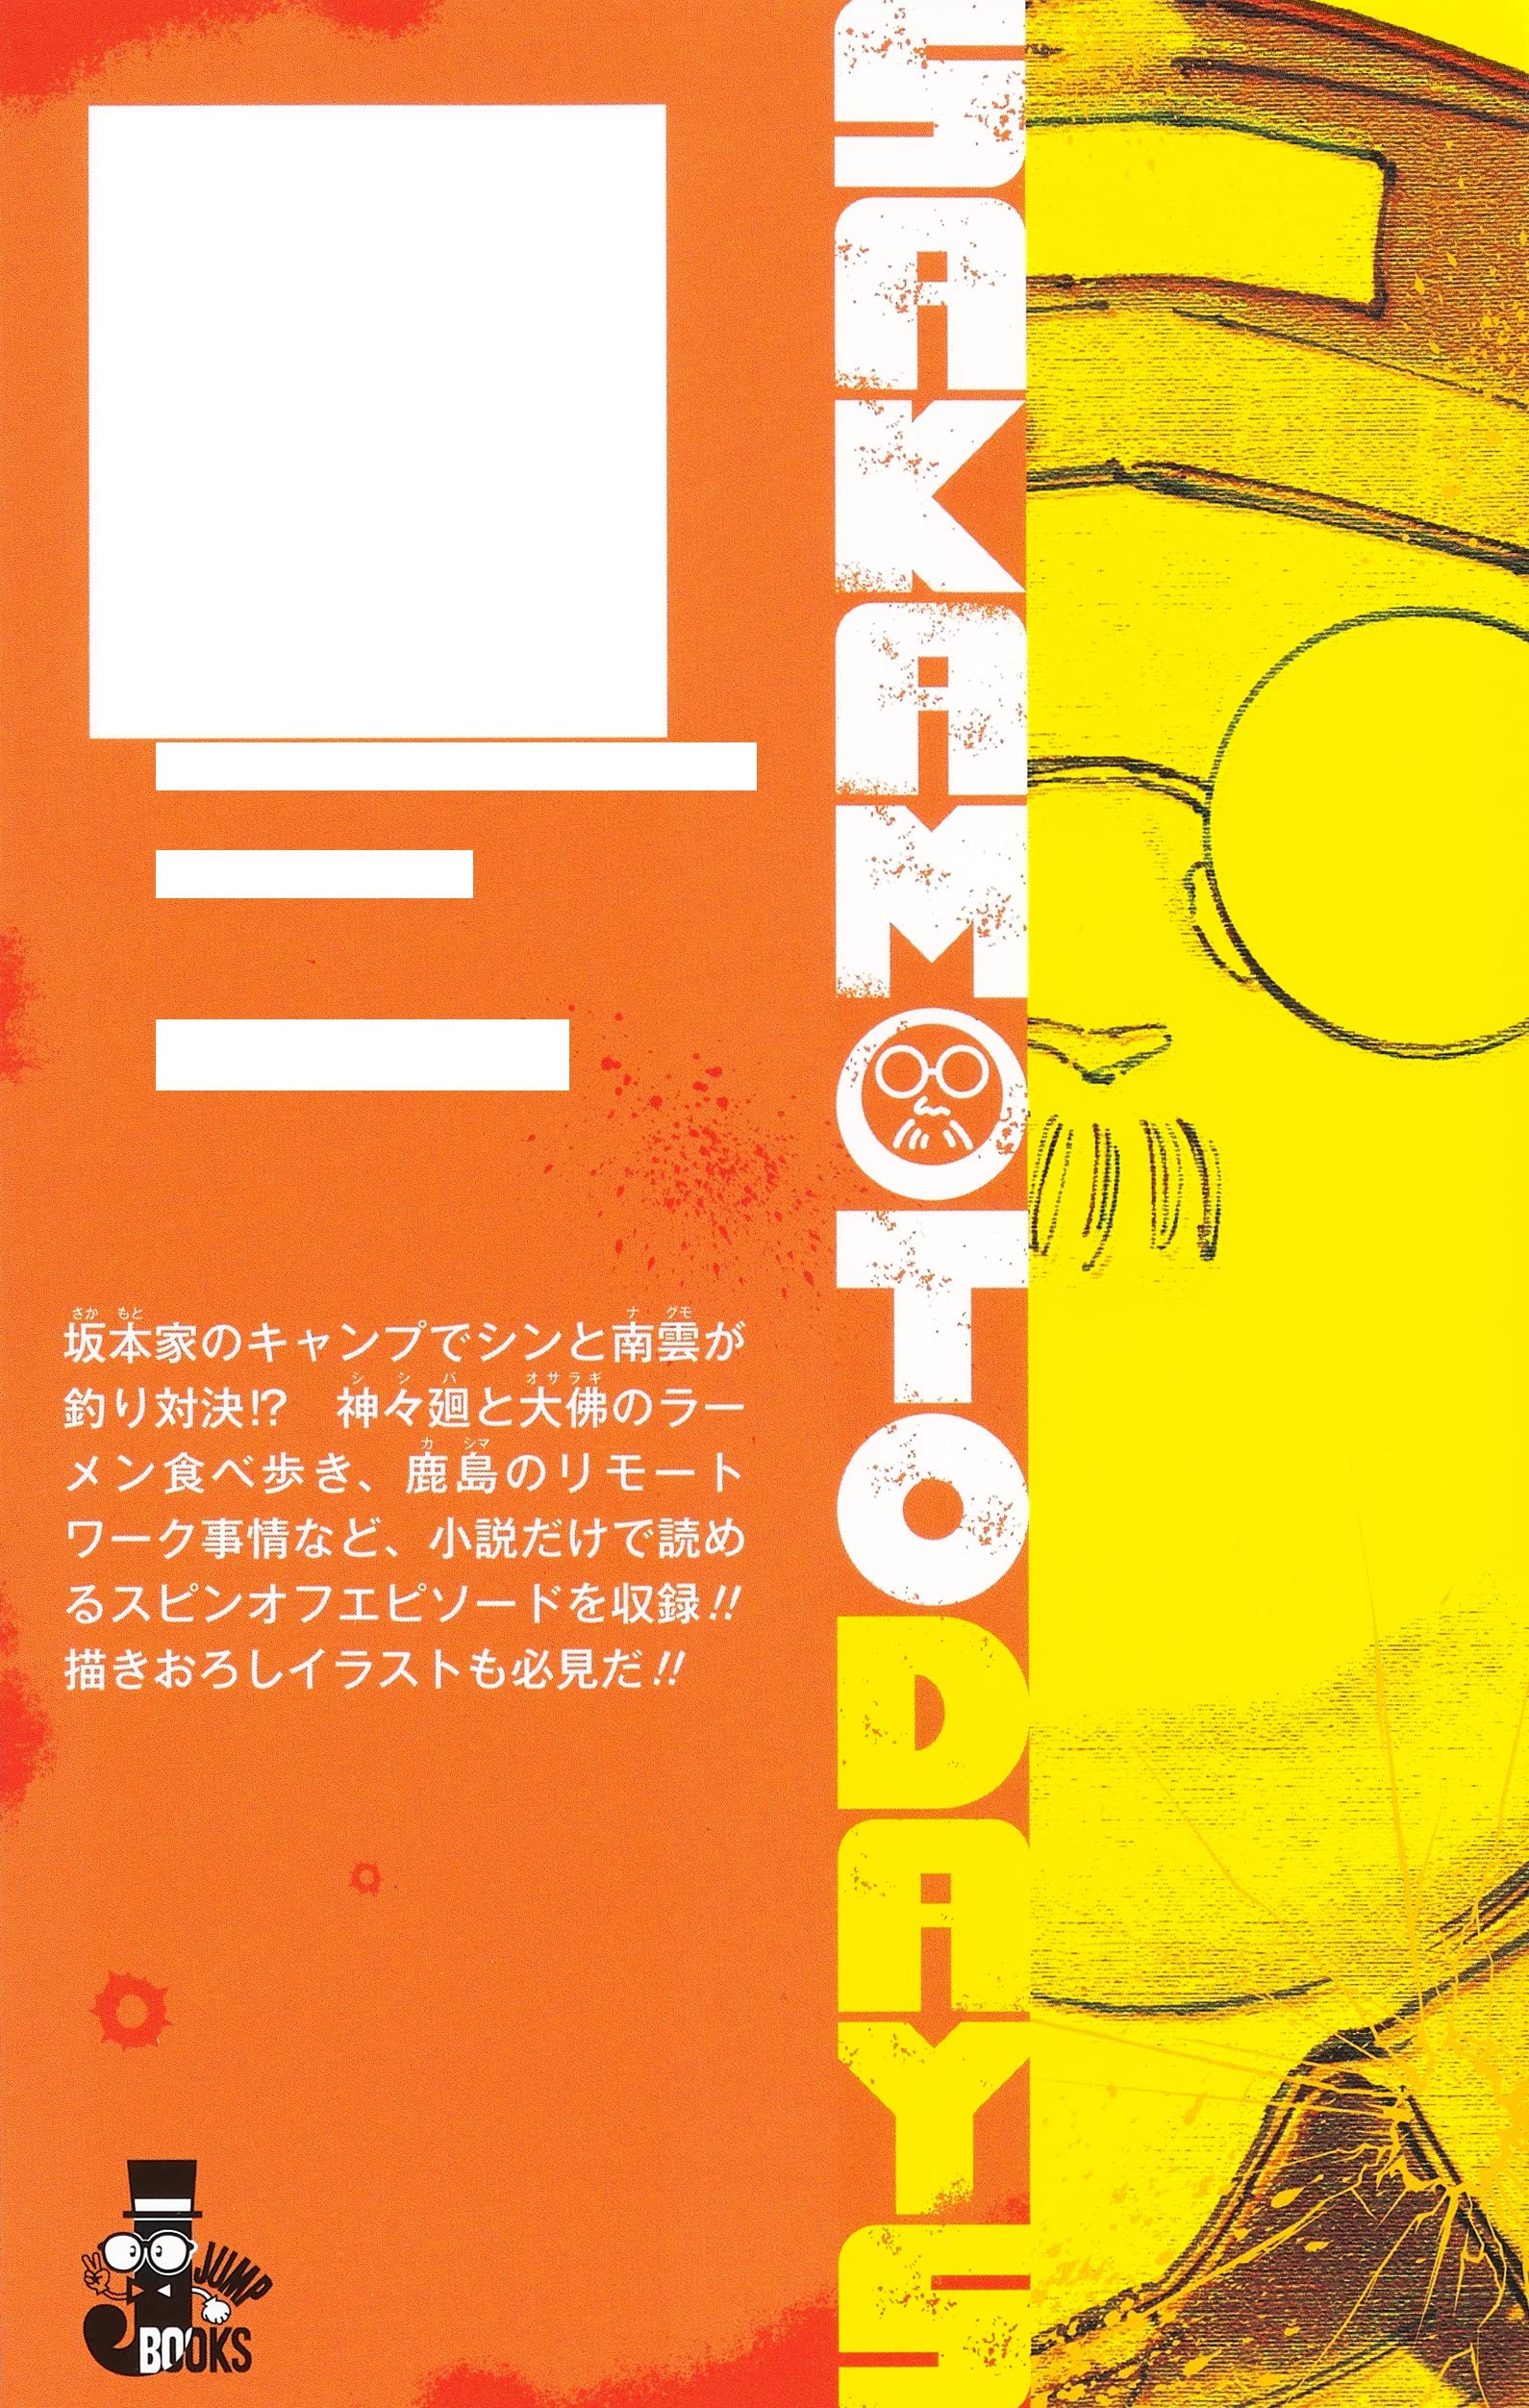 Sakamoto Days: Koroshiya no Method  Light Novel - Pictures - MyAnimeList .net